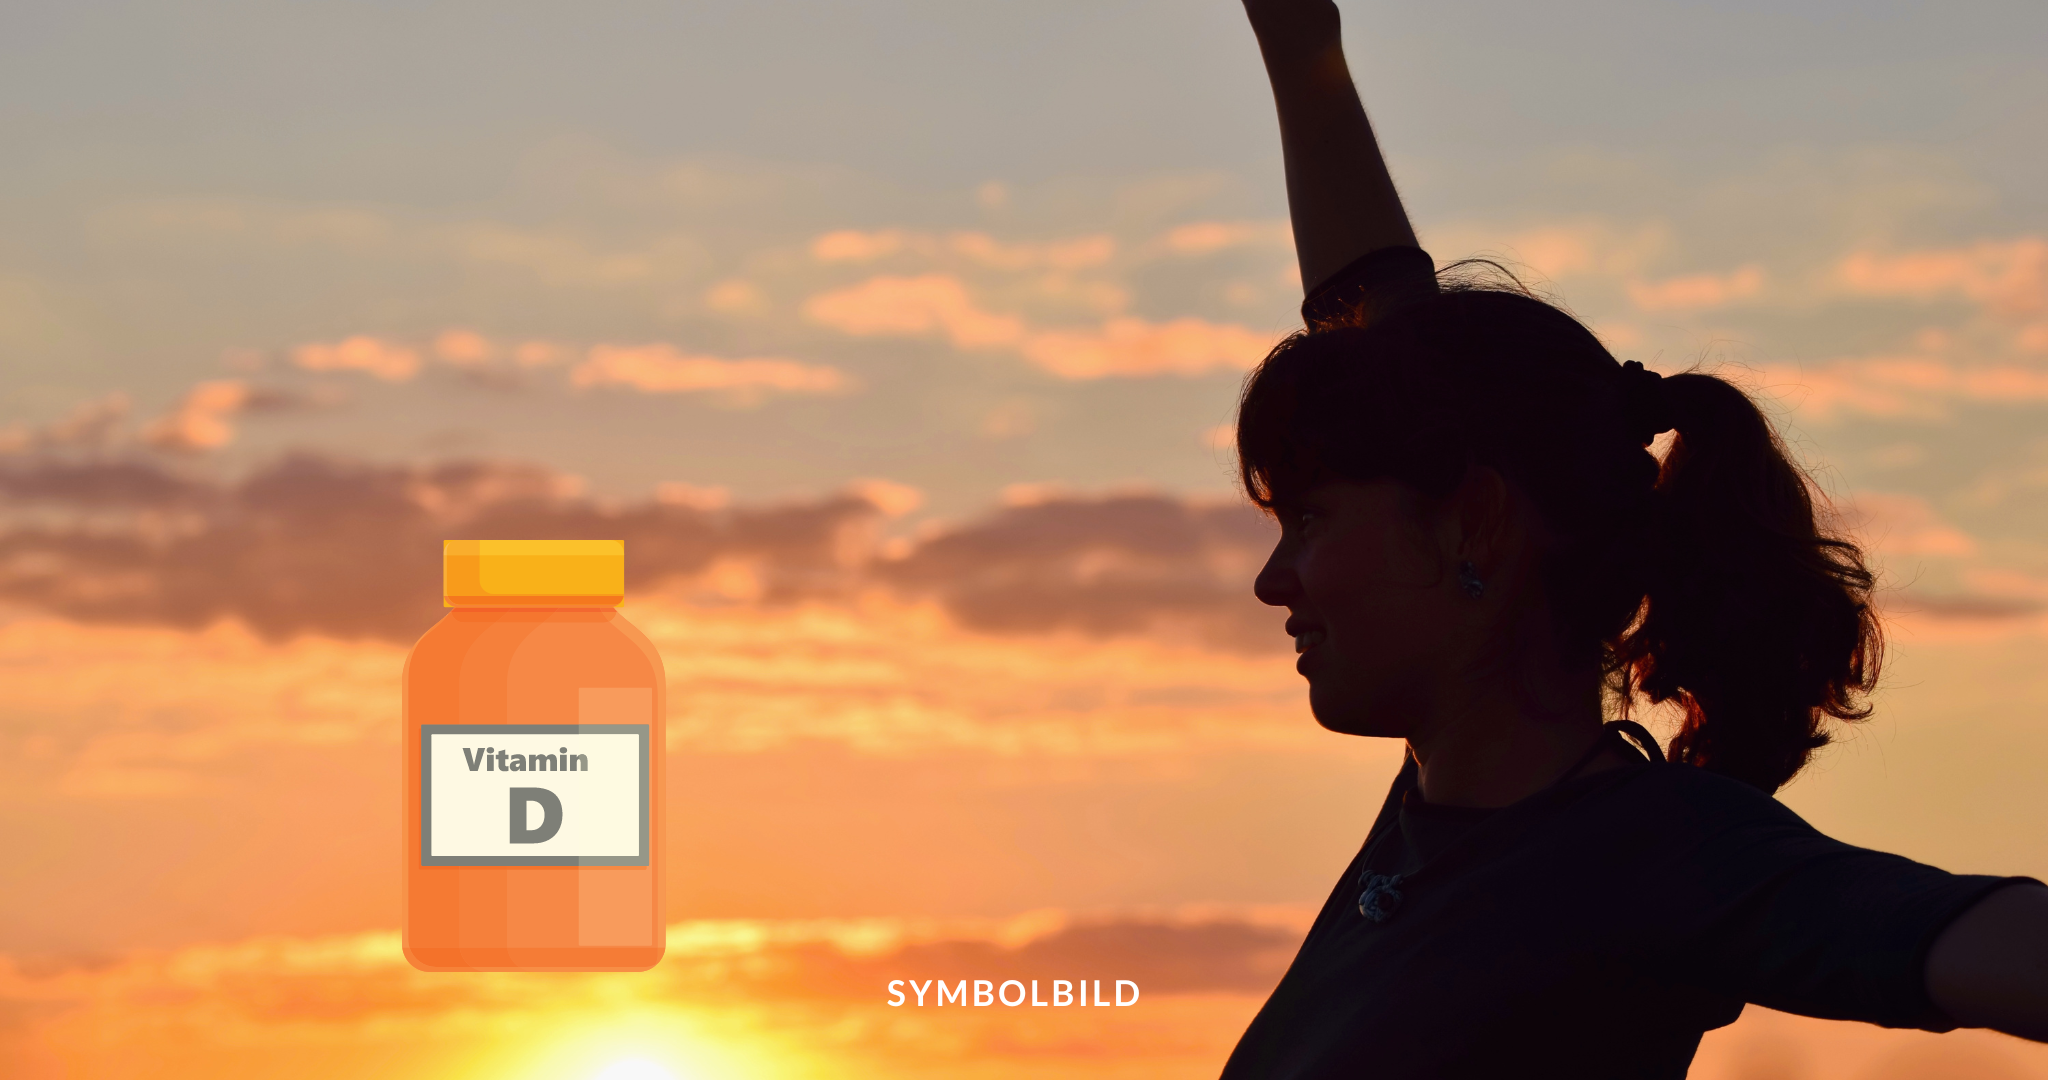 Das Bild zeigt eine Silhouette einer Person mit erhobenen Armen vor einem Sonnenuntergangshimmel. Im Vordergrund befindet sich eine überlagerte Grafik einer orangefarbenen Vitamin-D-Flasche, was darauf hindeutet, dass das Bild das Konzept der Vitamin-D-Gewinnung durch Sonnenlicht veranschaulichen könnte. Vitamin D Symbolbild